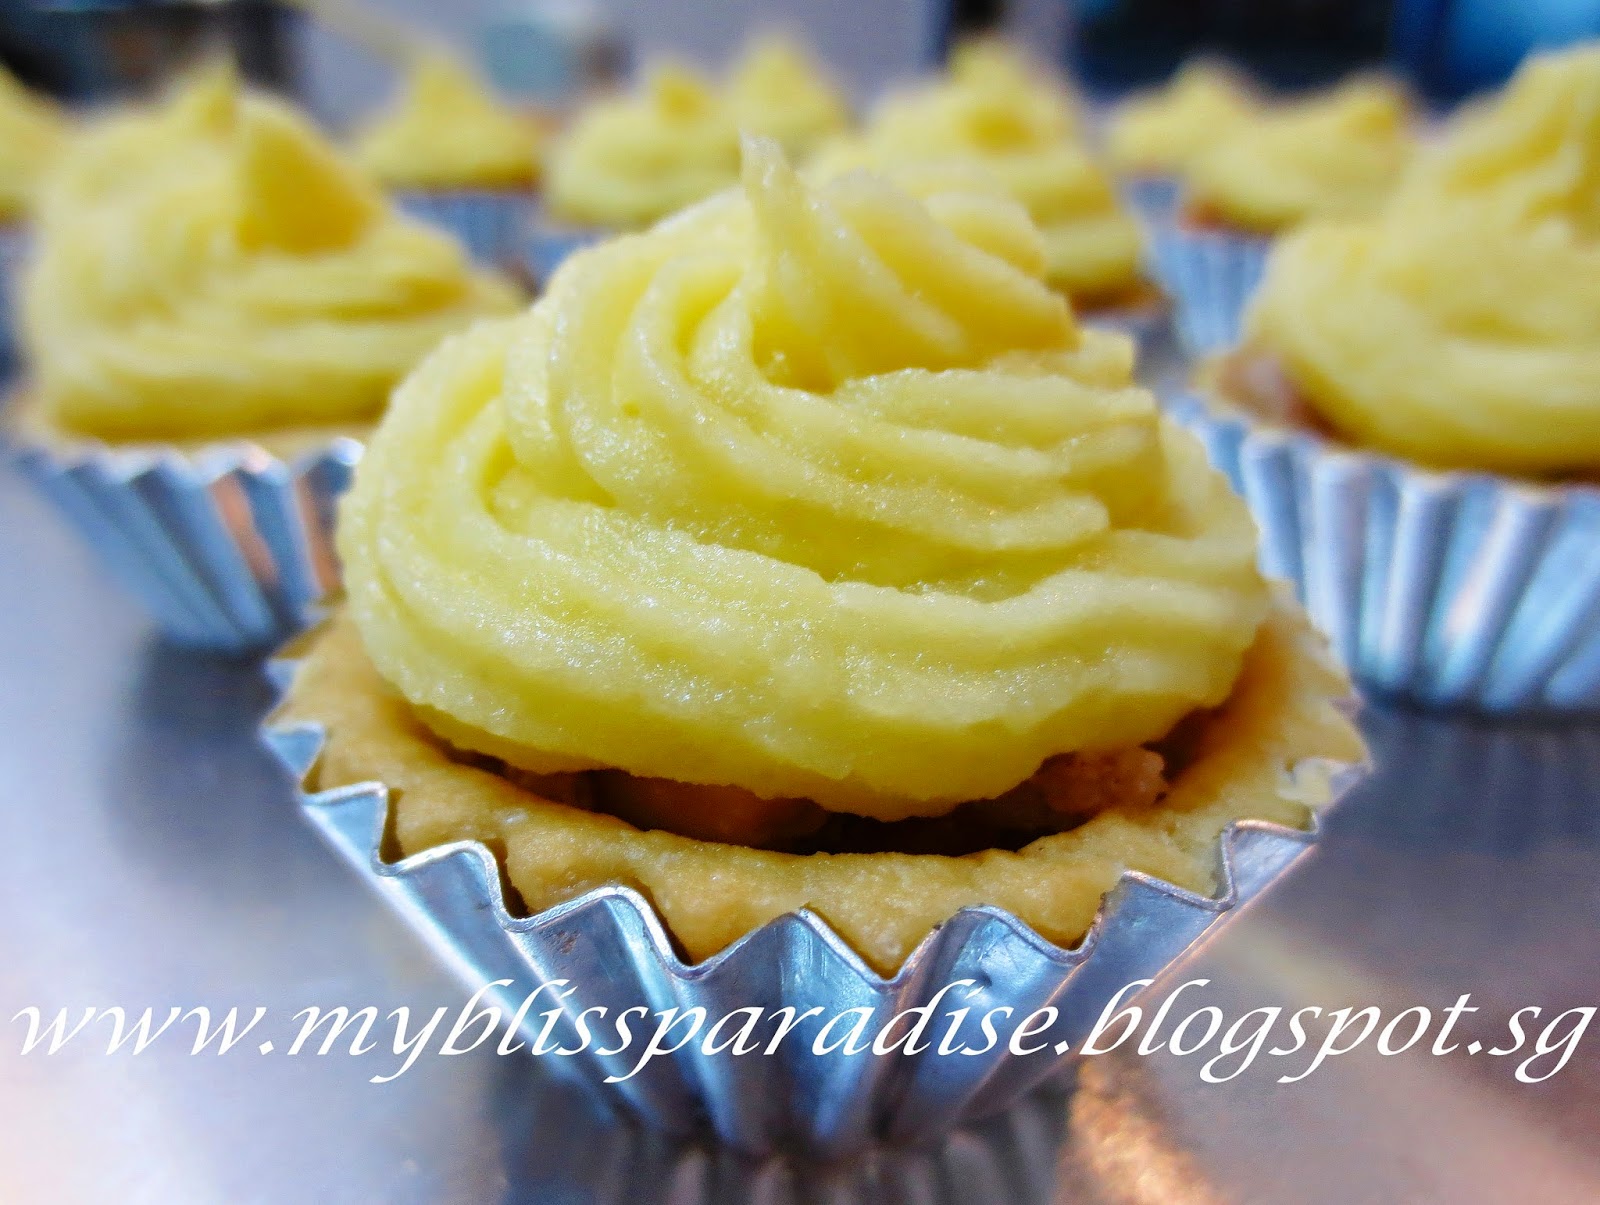 http://myblissparadise.blogspot.sg/2014/06/rosti-potato-mini-tarts-20-jun-14.html